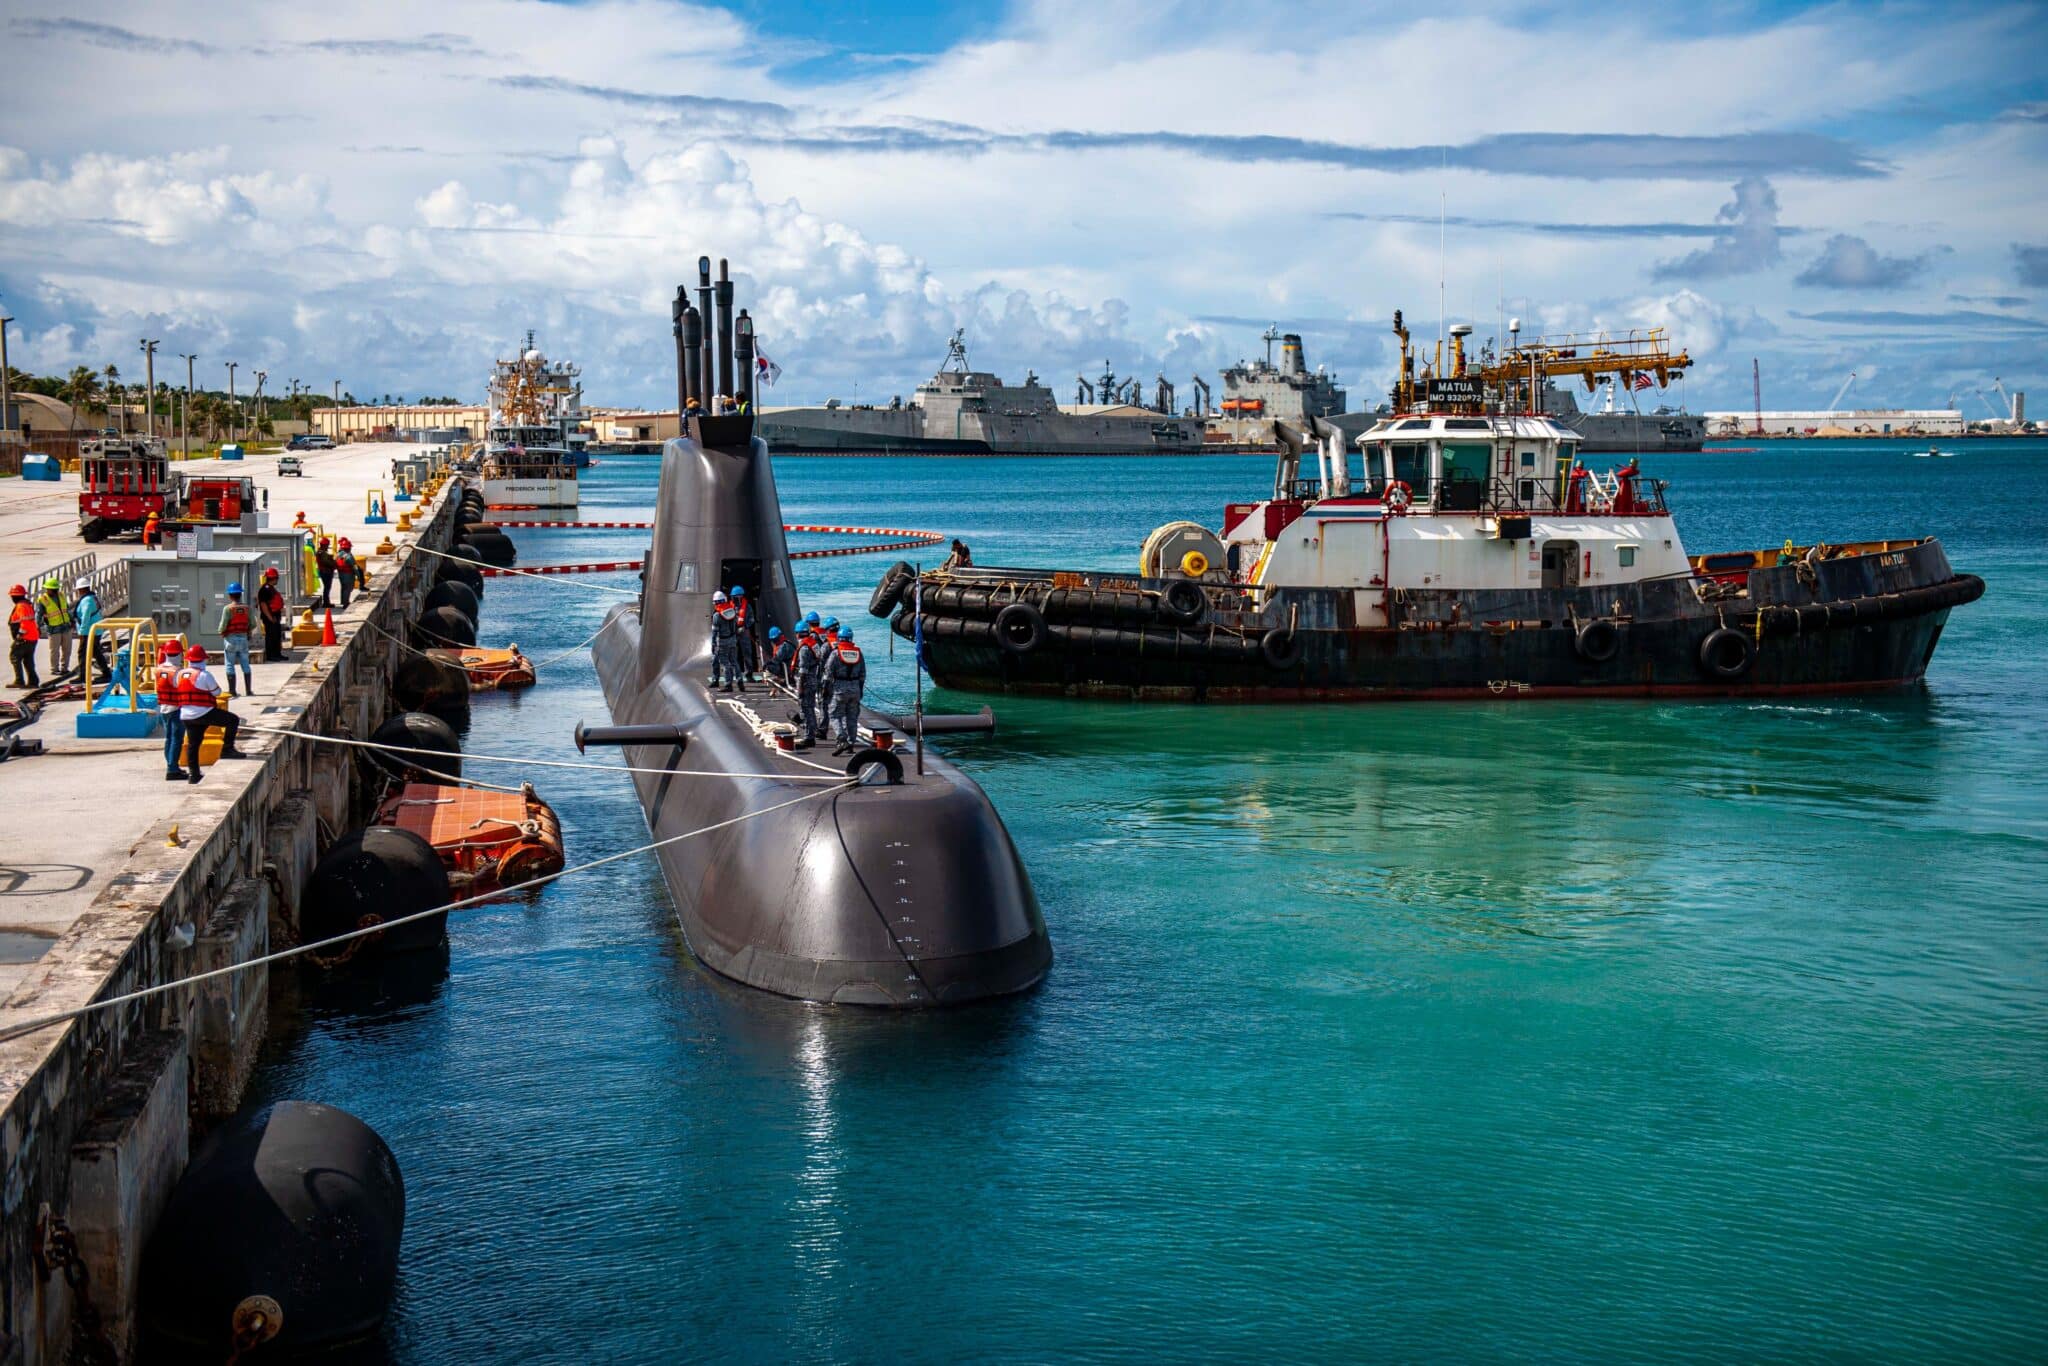 Gli Stati Uniti e la Repubblica di Corea hanno condotto esercitazioni con il sottomarino a propulsione nucleare USS Topeka e il sottomarino diesel-elettrico ROKS Jung Ji.